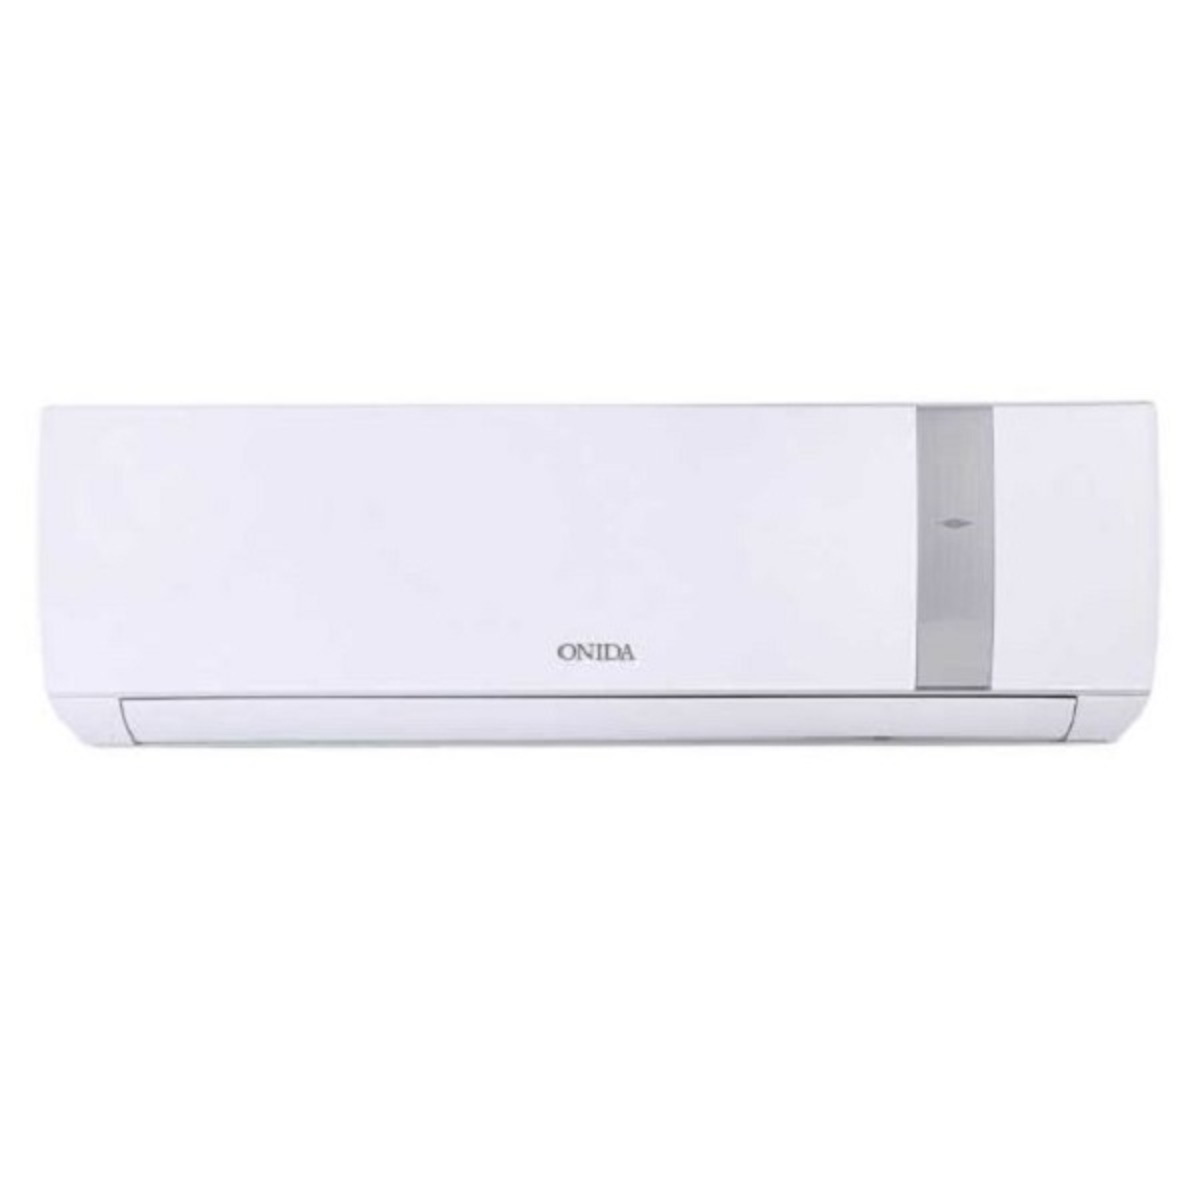 Onida Inverter Air Conditioner IR123 GNO 1 Ton 3*